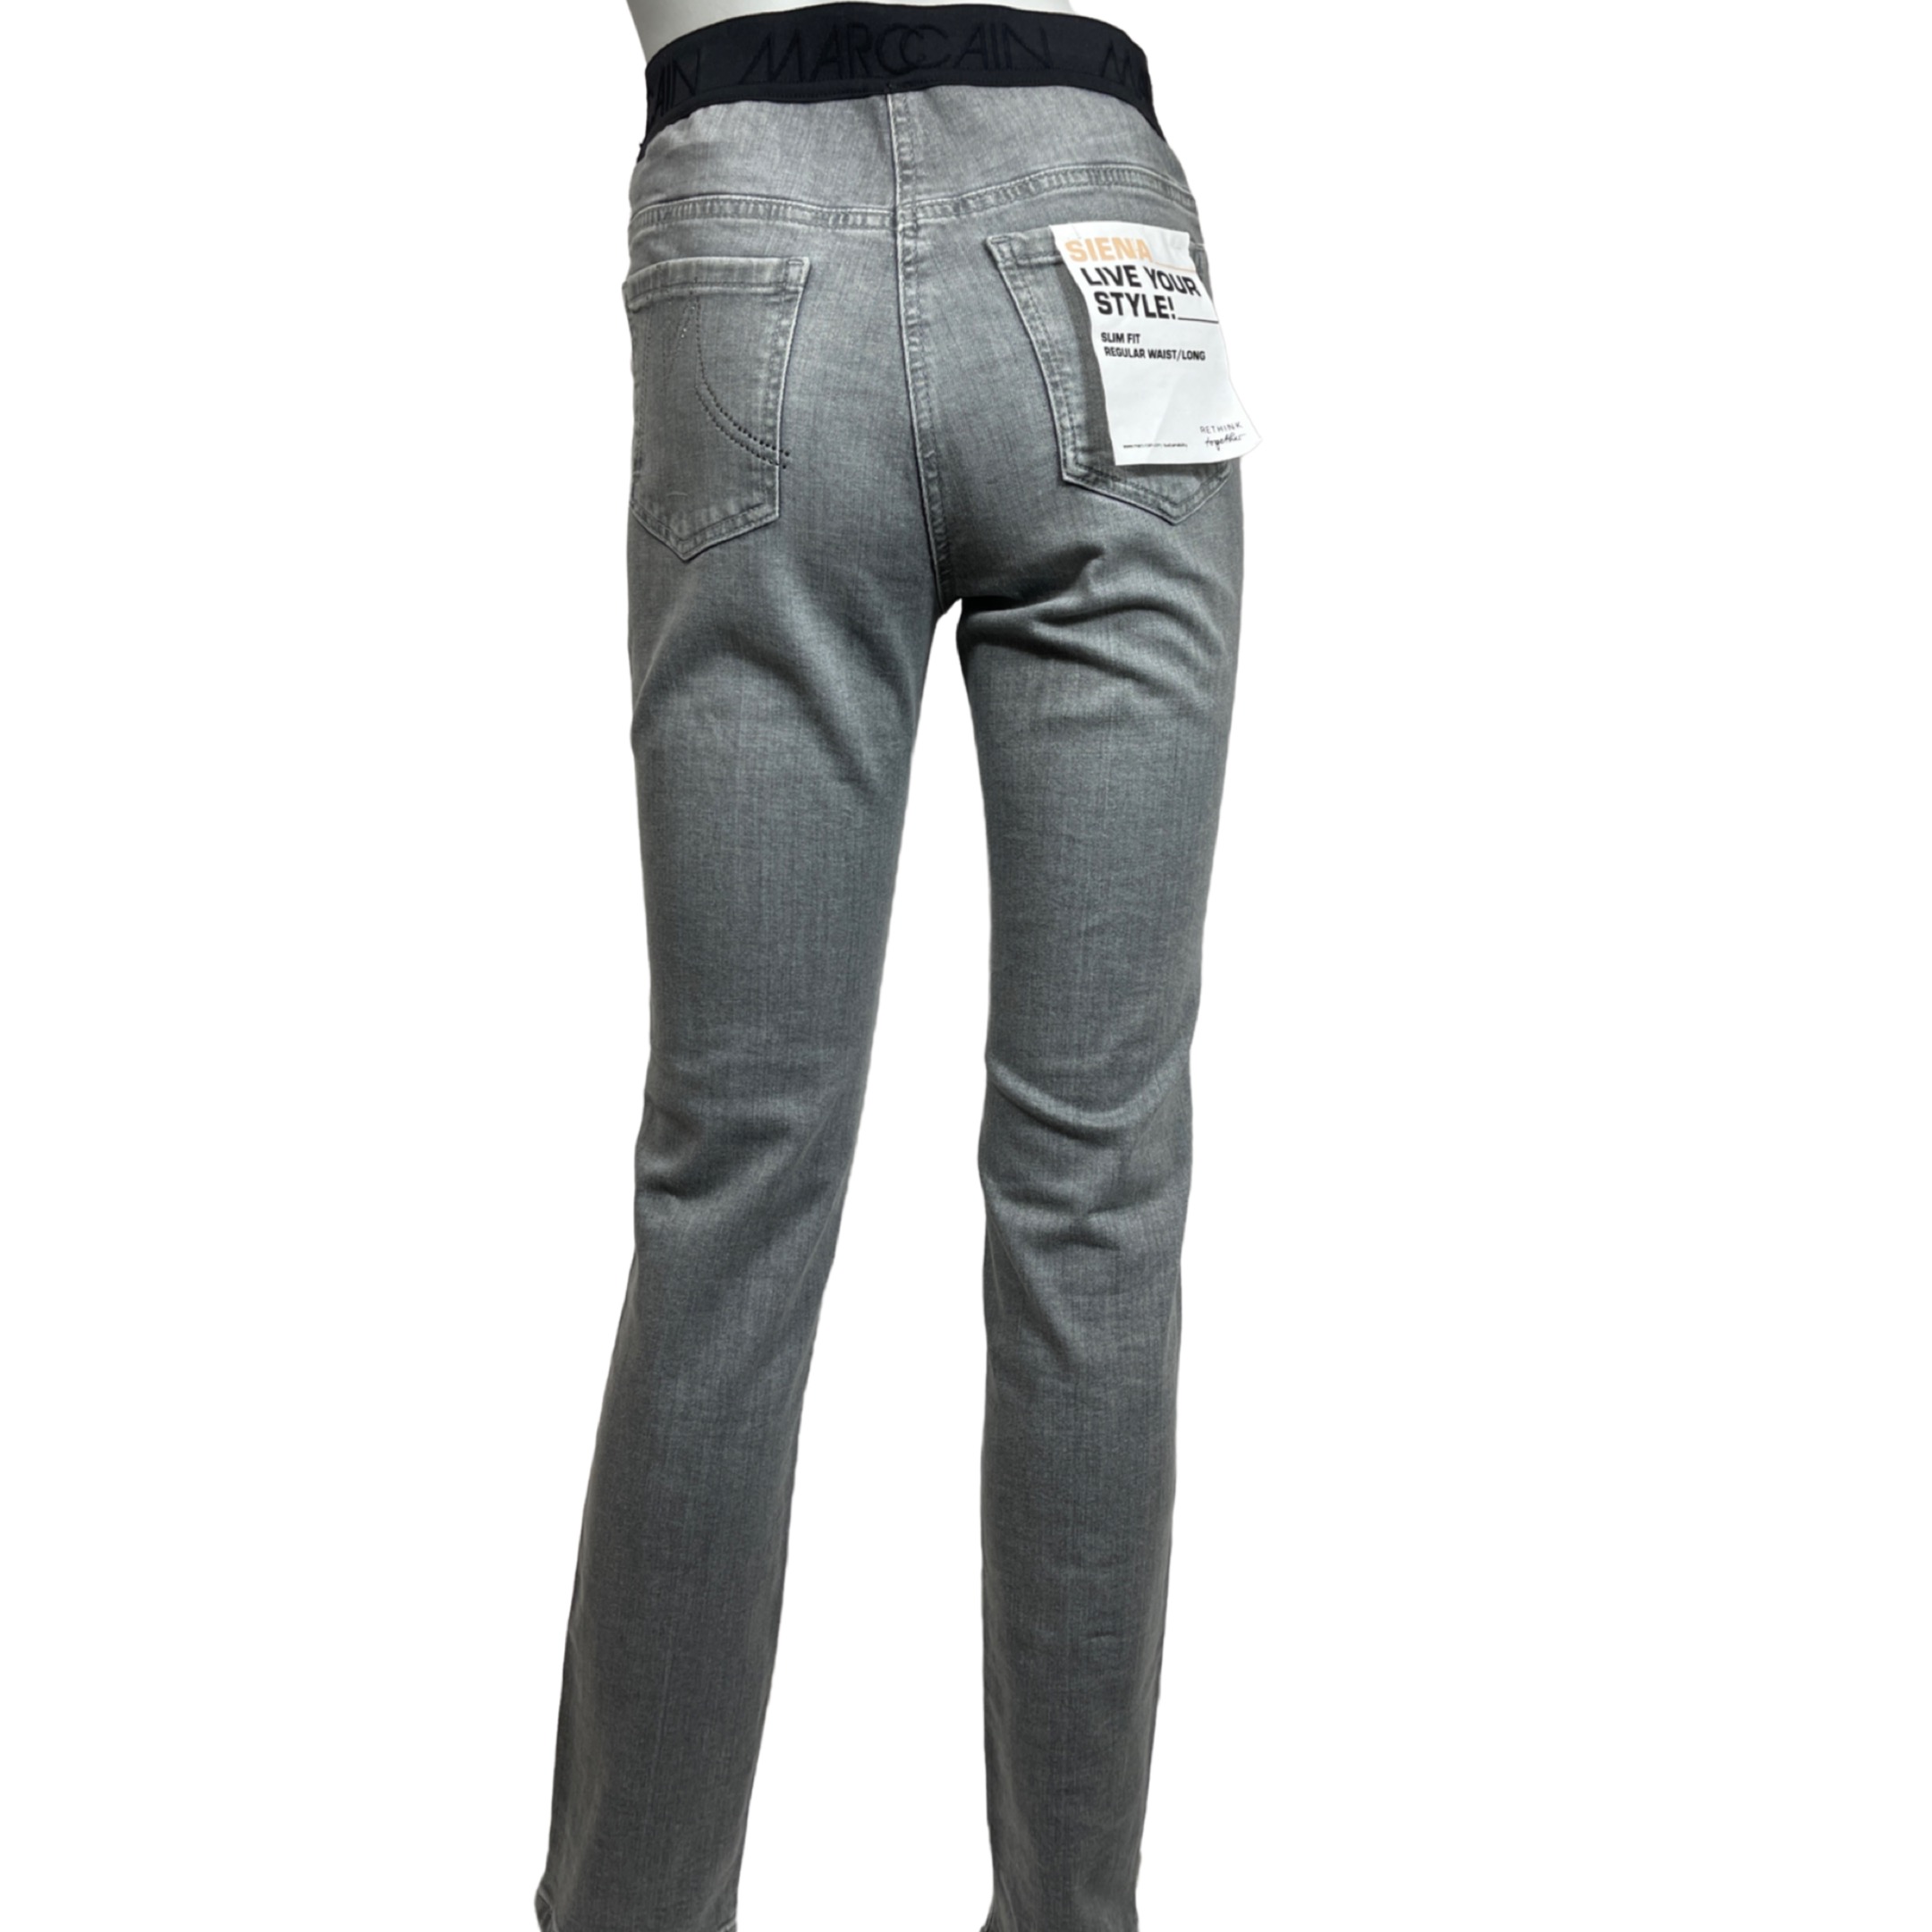 MARC CAIN UP 82.05 D74 Damen Jeans Rethink Together SIENA Slim Fit Grau 820